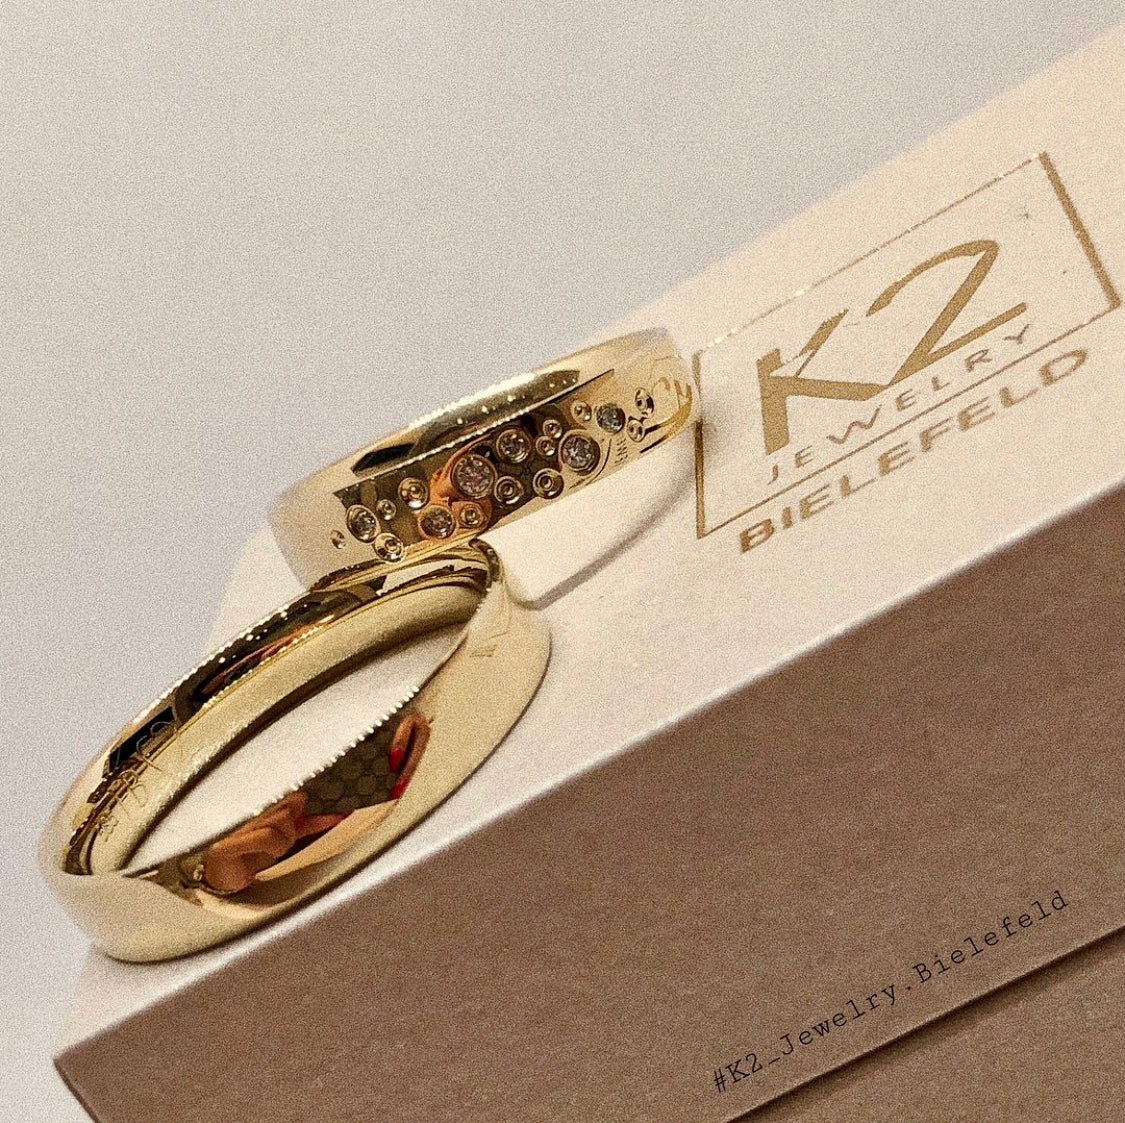 Goldene Eheringe mit Sternenhimmelbesatz auf einer K2 Jewelry Schatulle.